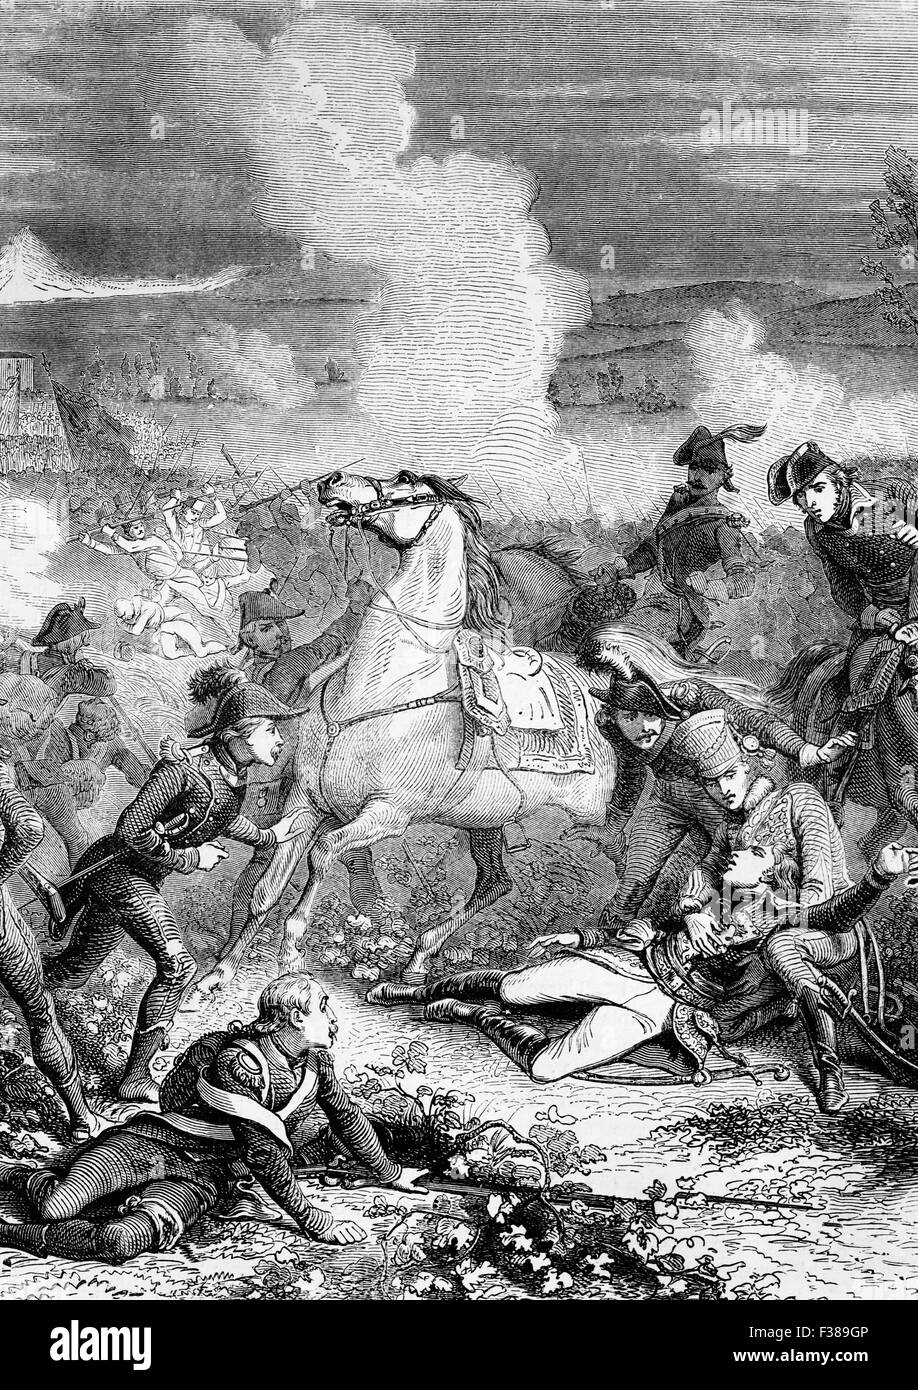 La mort du général Louis Charles Antoine Desaix (1768 -1800), un général français et leader militaire au cours de la bataille de Marengo, le 14 juin 1800, entre les forces françaises sous Napoléon Bonaparte et les forces autrichiennes près de la ville d'Alexandrie, dans le Piémont, en Italie. Banque D'Images